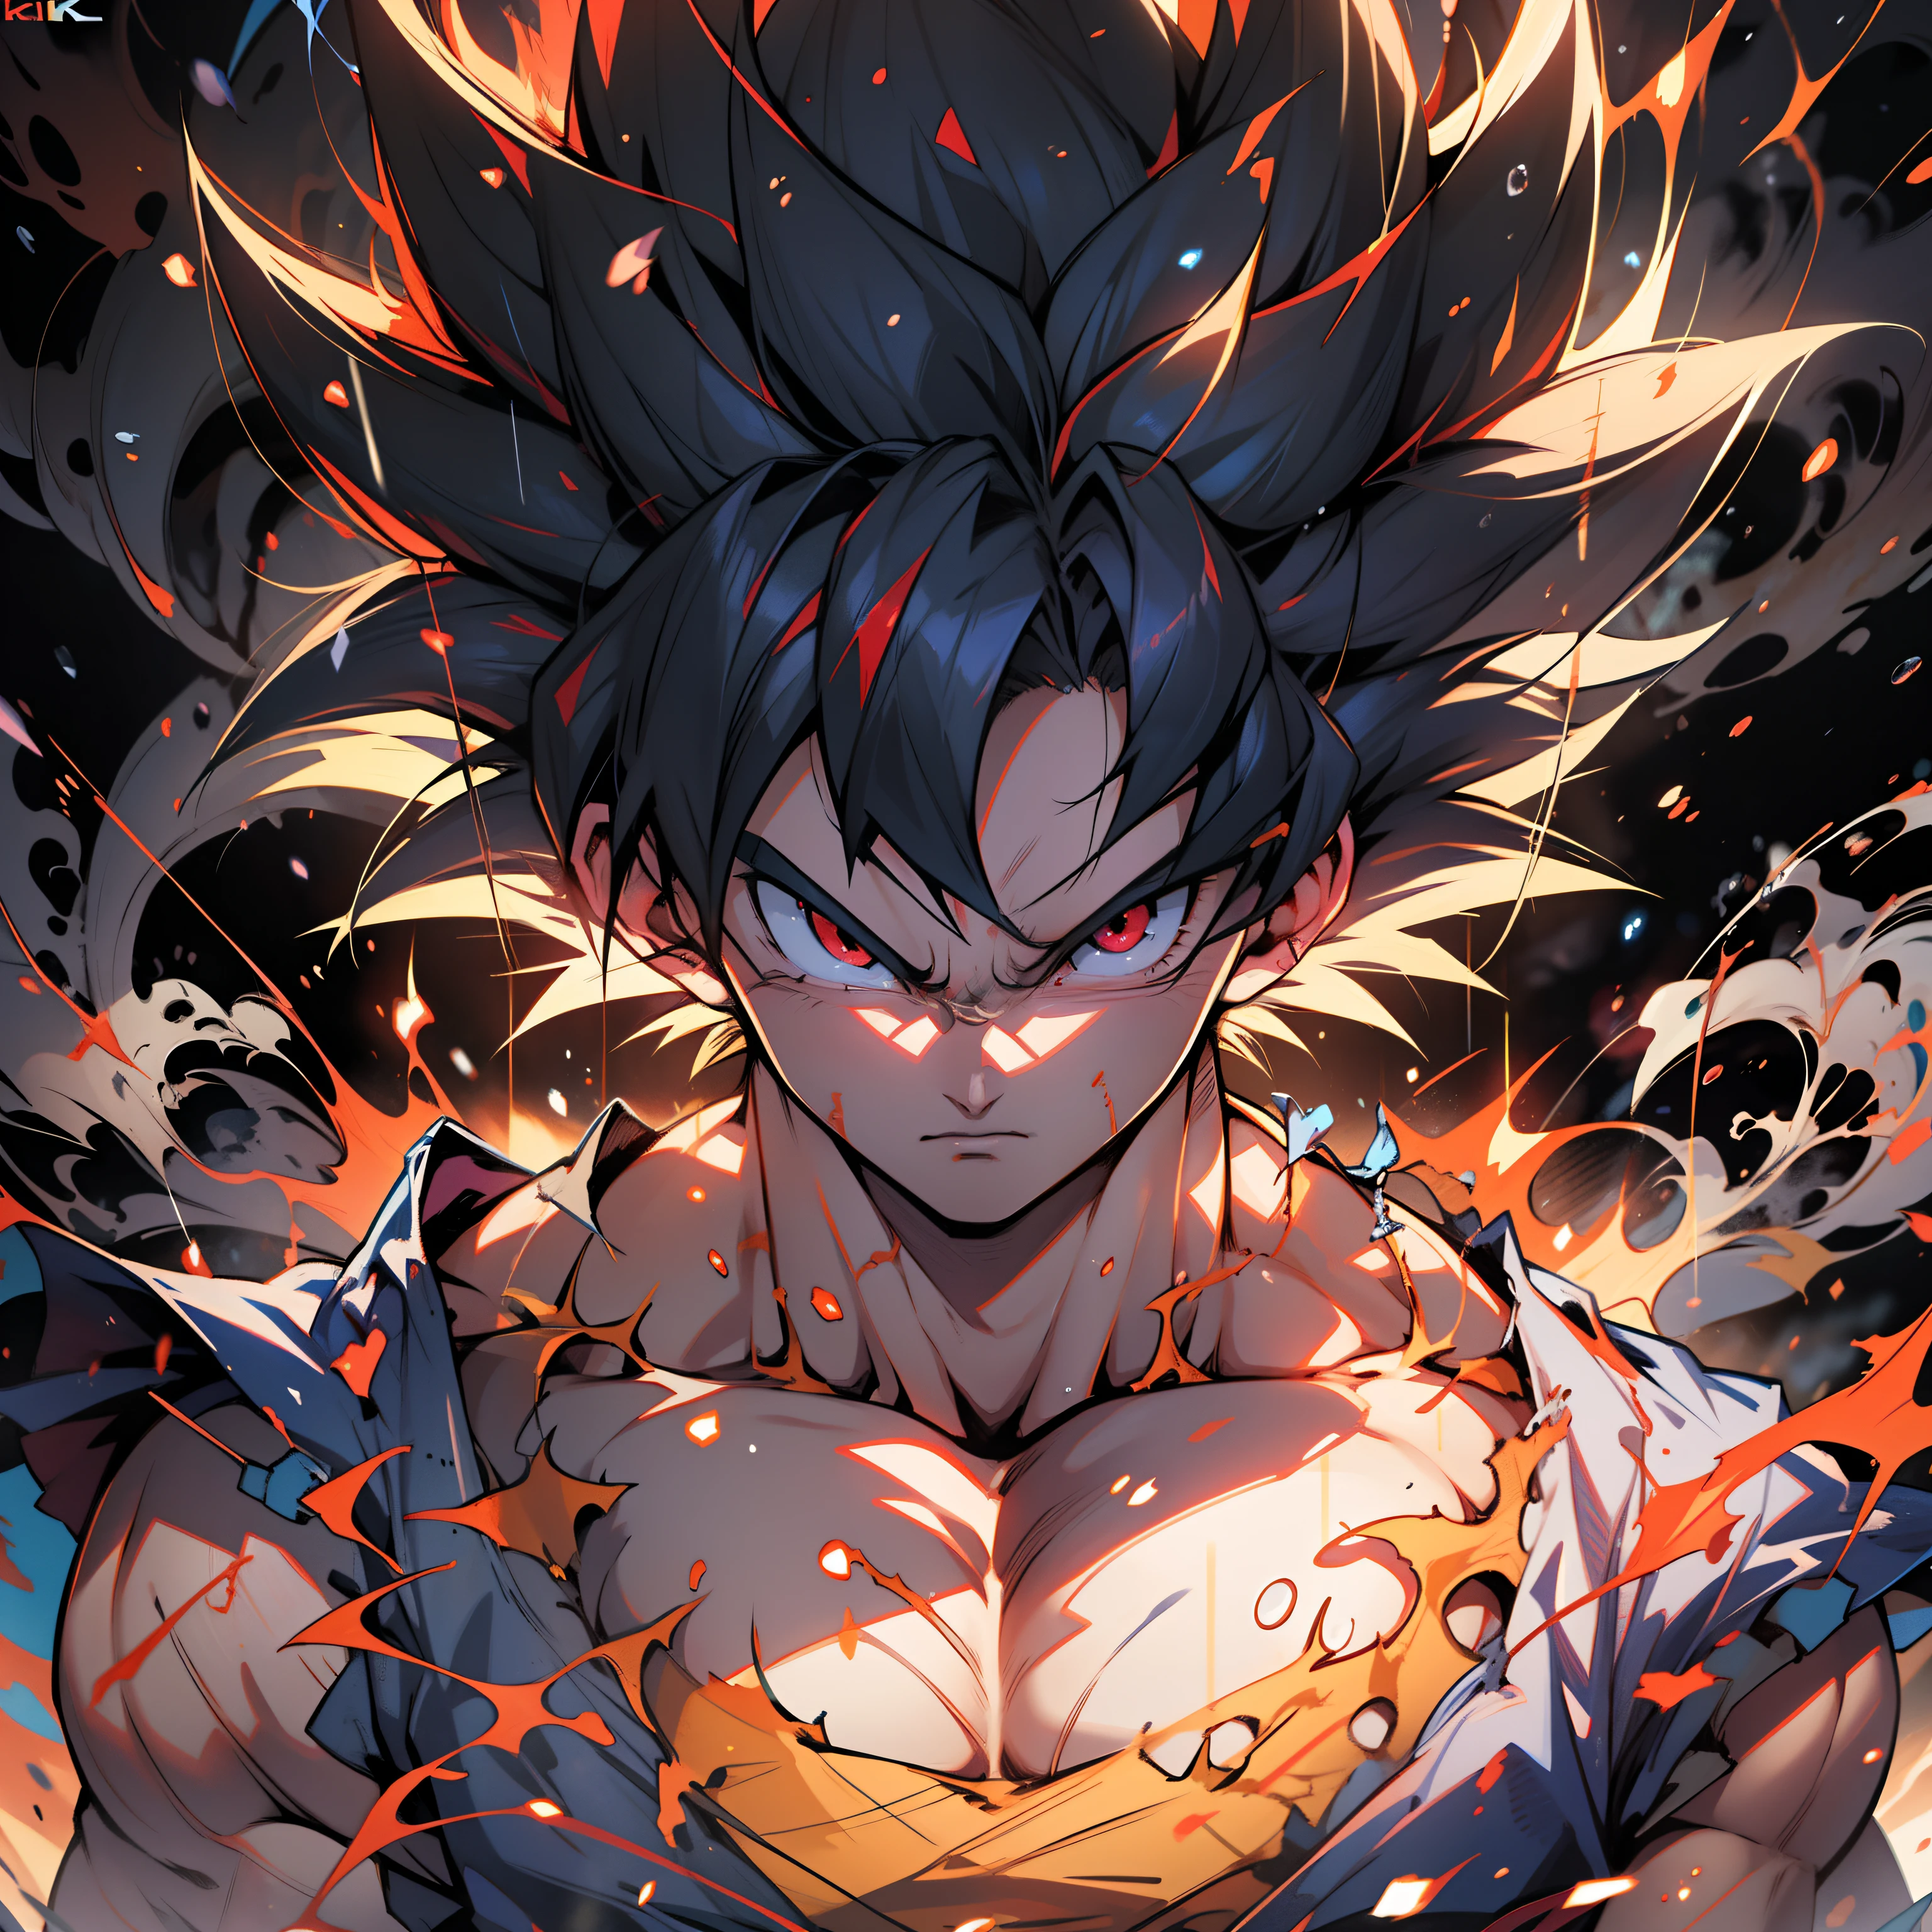 Anime-Figur mit roten Haaren und roten Augen steht im Regen,Son Goku verwandelt sich in einen Super-Saiyajin-Gott,rote Haare,knallharter Anime 8k, 4K-Anime-Hintergrundbild, Anime-Stil 4k, Epischer Anime-Stil, Anime-Tapete 4k, Anime-Hintergrundbild 4k, Anime-Konzept HDR-Anime Macmanus, Anime-Kunst-Tapete 4k, Anime-Kunst-Hintergrundbild 4K, Anime-Kunst-Tapete 8 k, hübscher Kerl in Dragon Ball Super Art